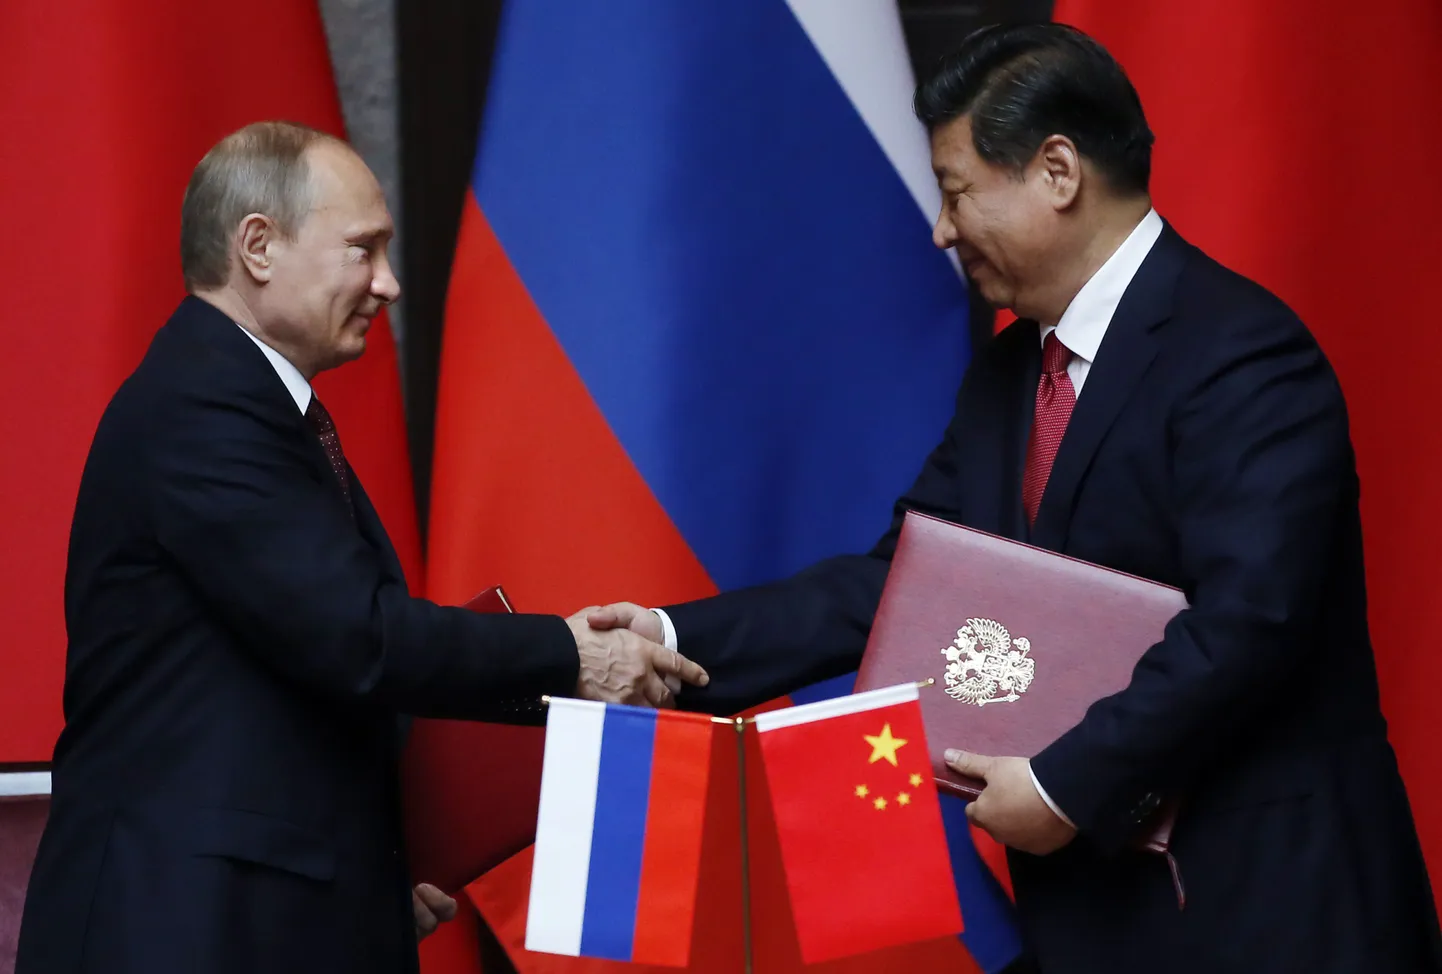 Меморандум об инвестициях в строительство железнодорожного моста был подписан по итогам переговоров лидеров России Владимира Путина и Китая Си Цзиньпиня во вторник.